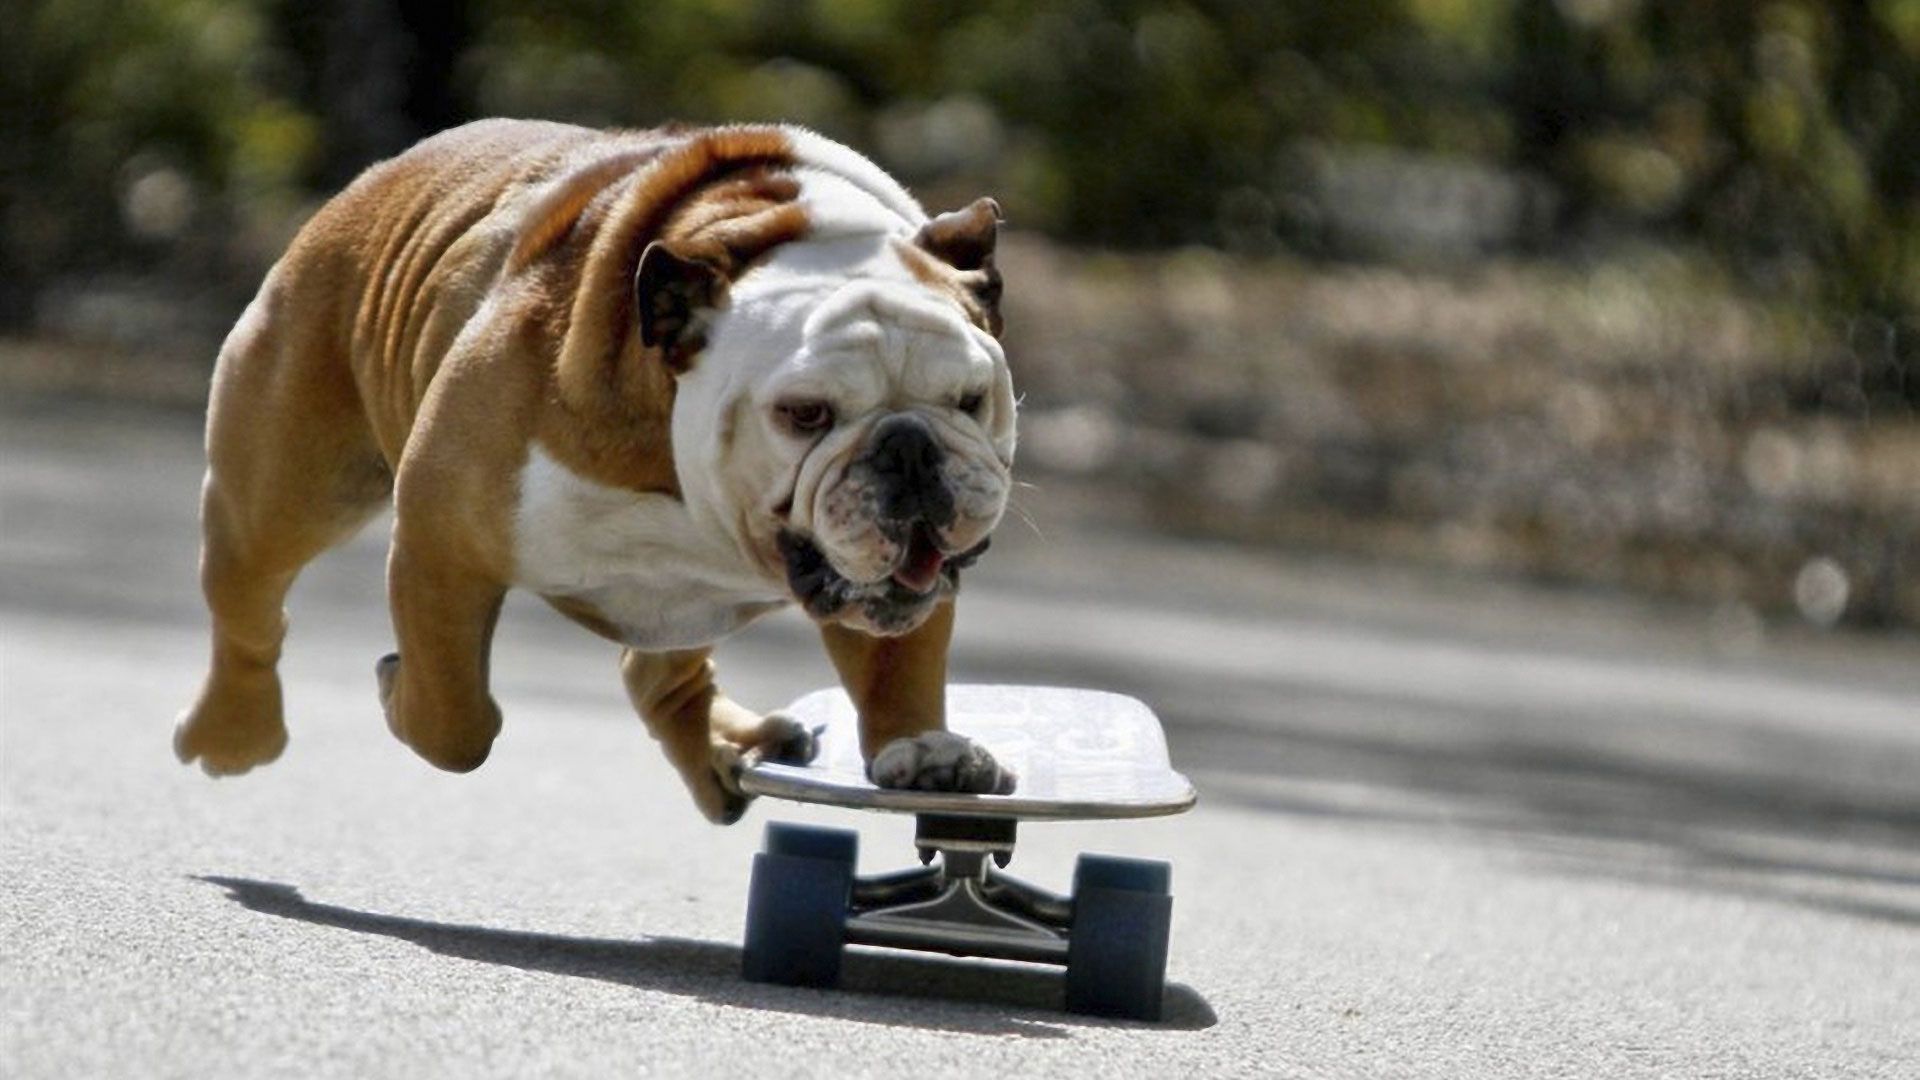 Bulldog On A Skateboard